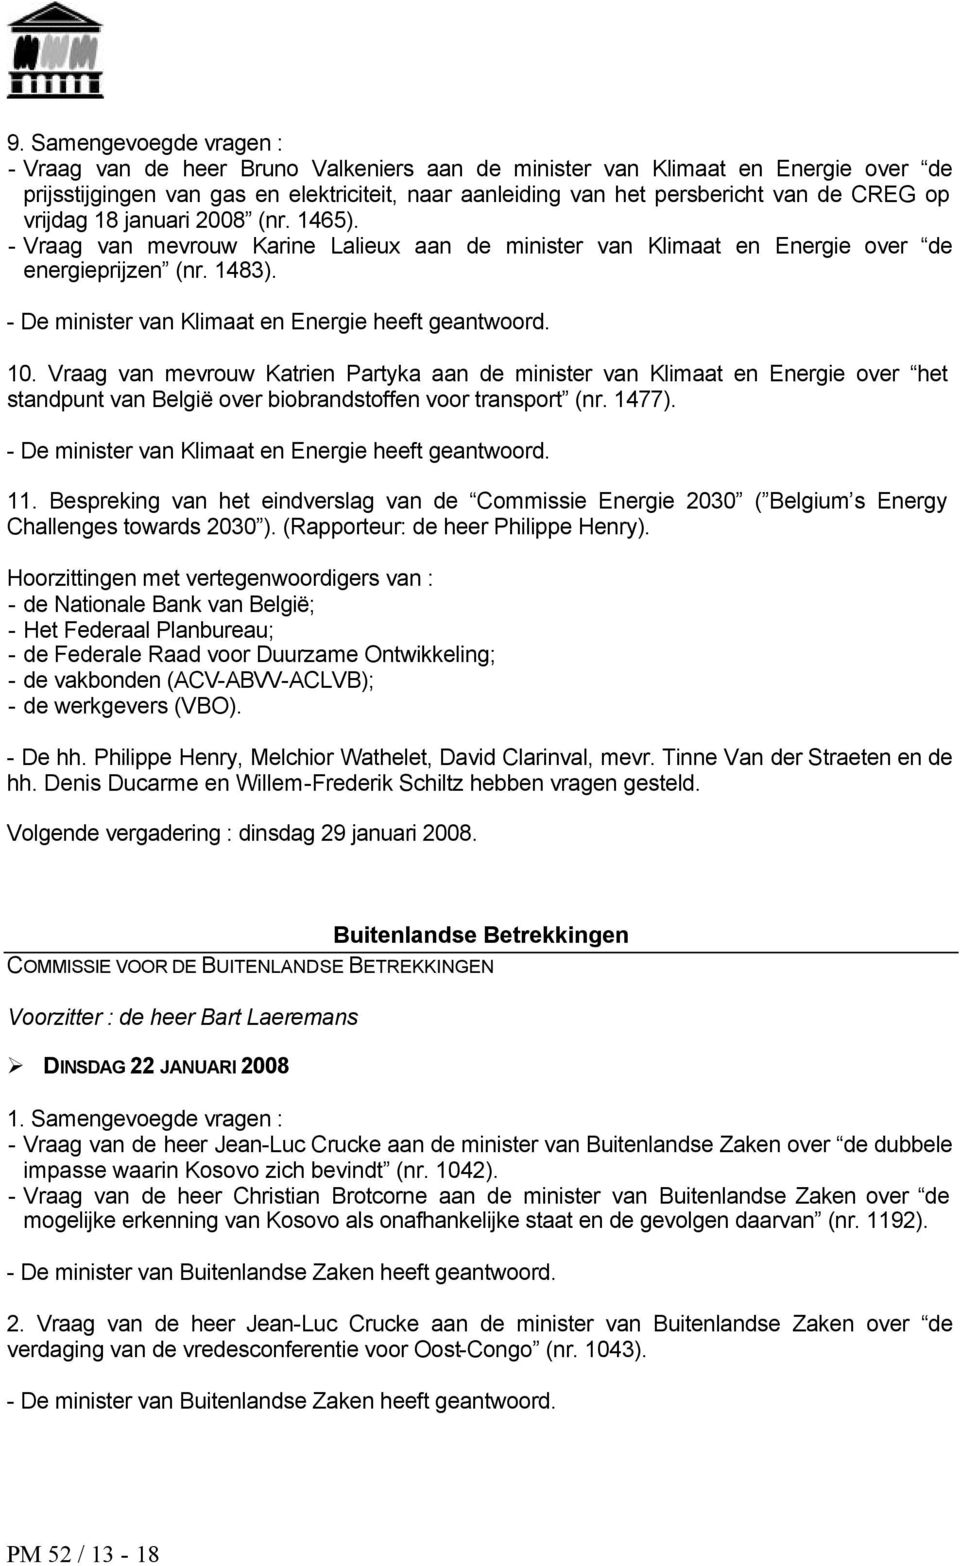 Vraag van mevrouw Katrien Partyka aan de minister van Klimaat en Energie over het standpunt van België over biobrandstoffen voor transport (nr. 1477). - De minister van Klimaat en Energie heeft 11.